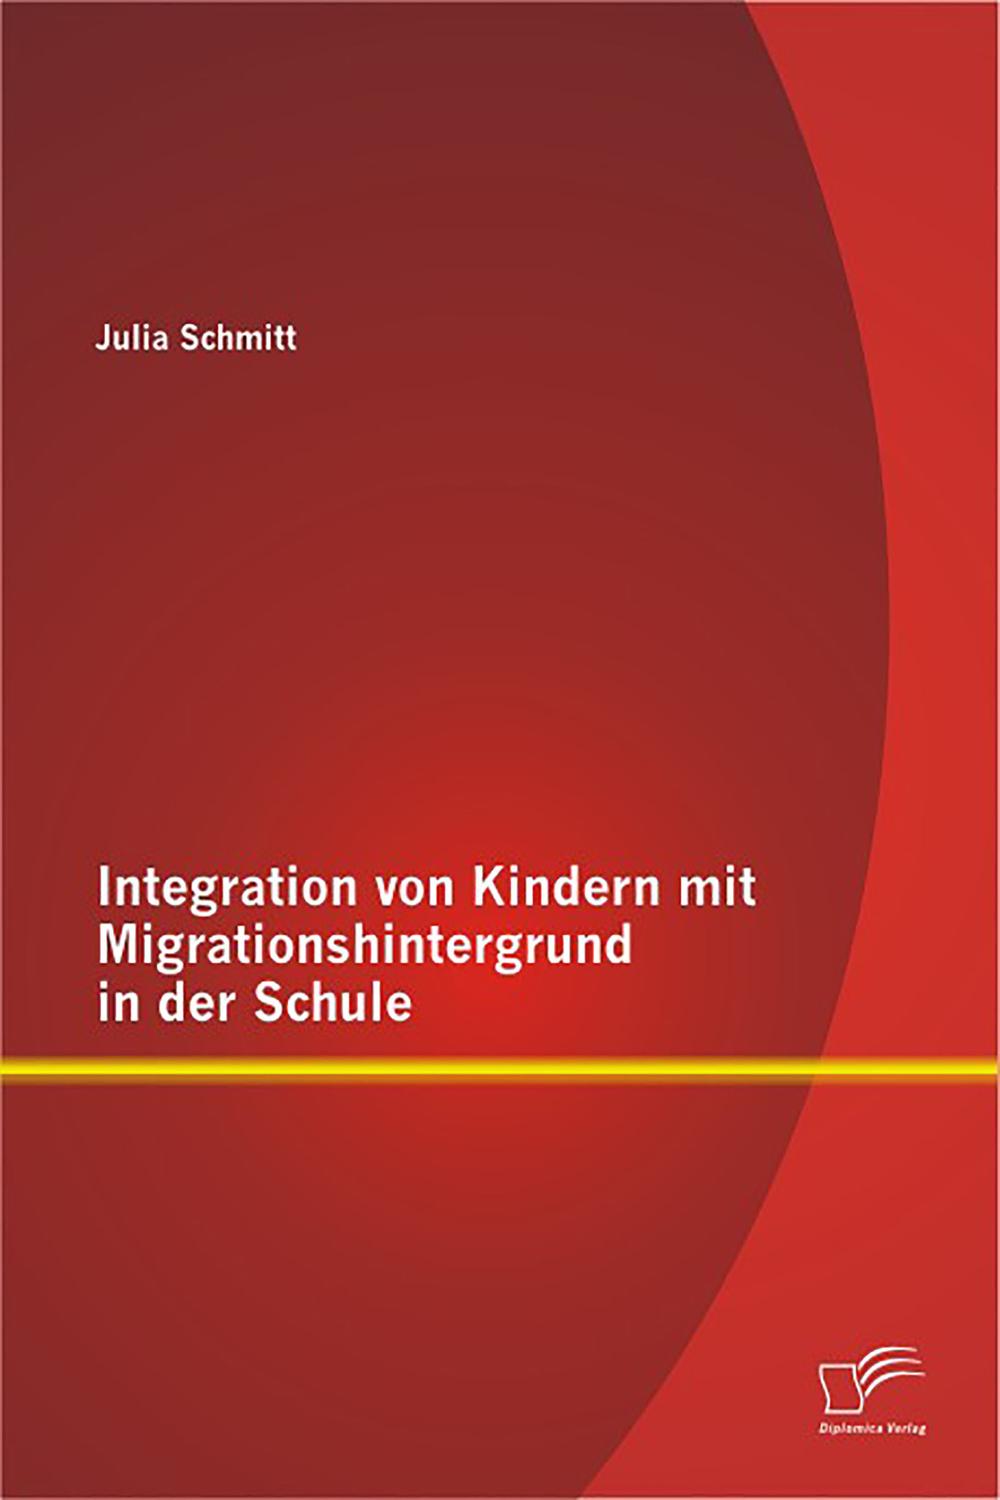 Integration von Kindern mit Migrationshintergrund in der Schule - Julia Schmitt